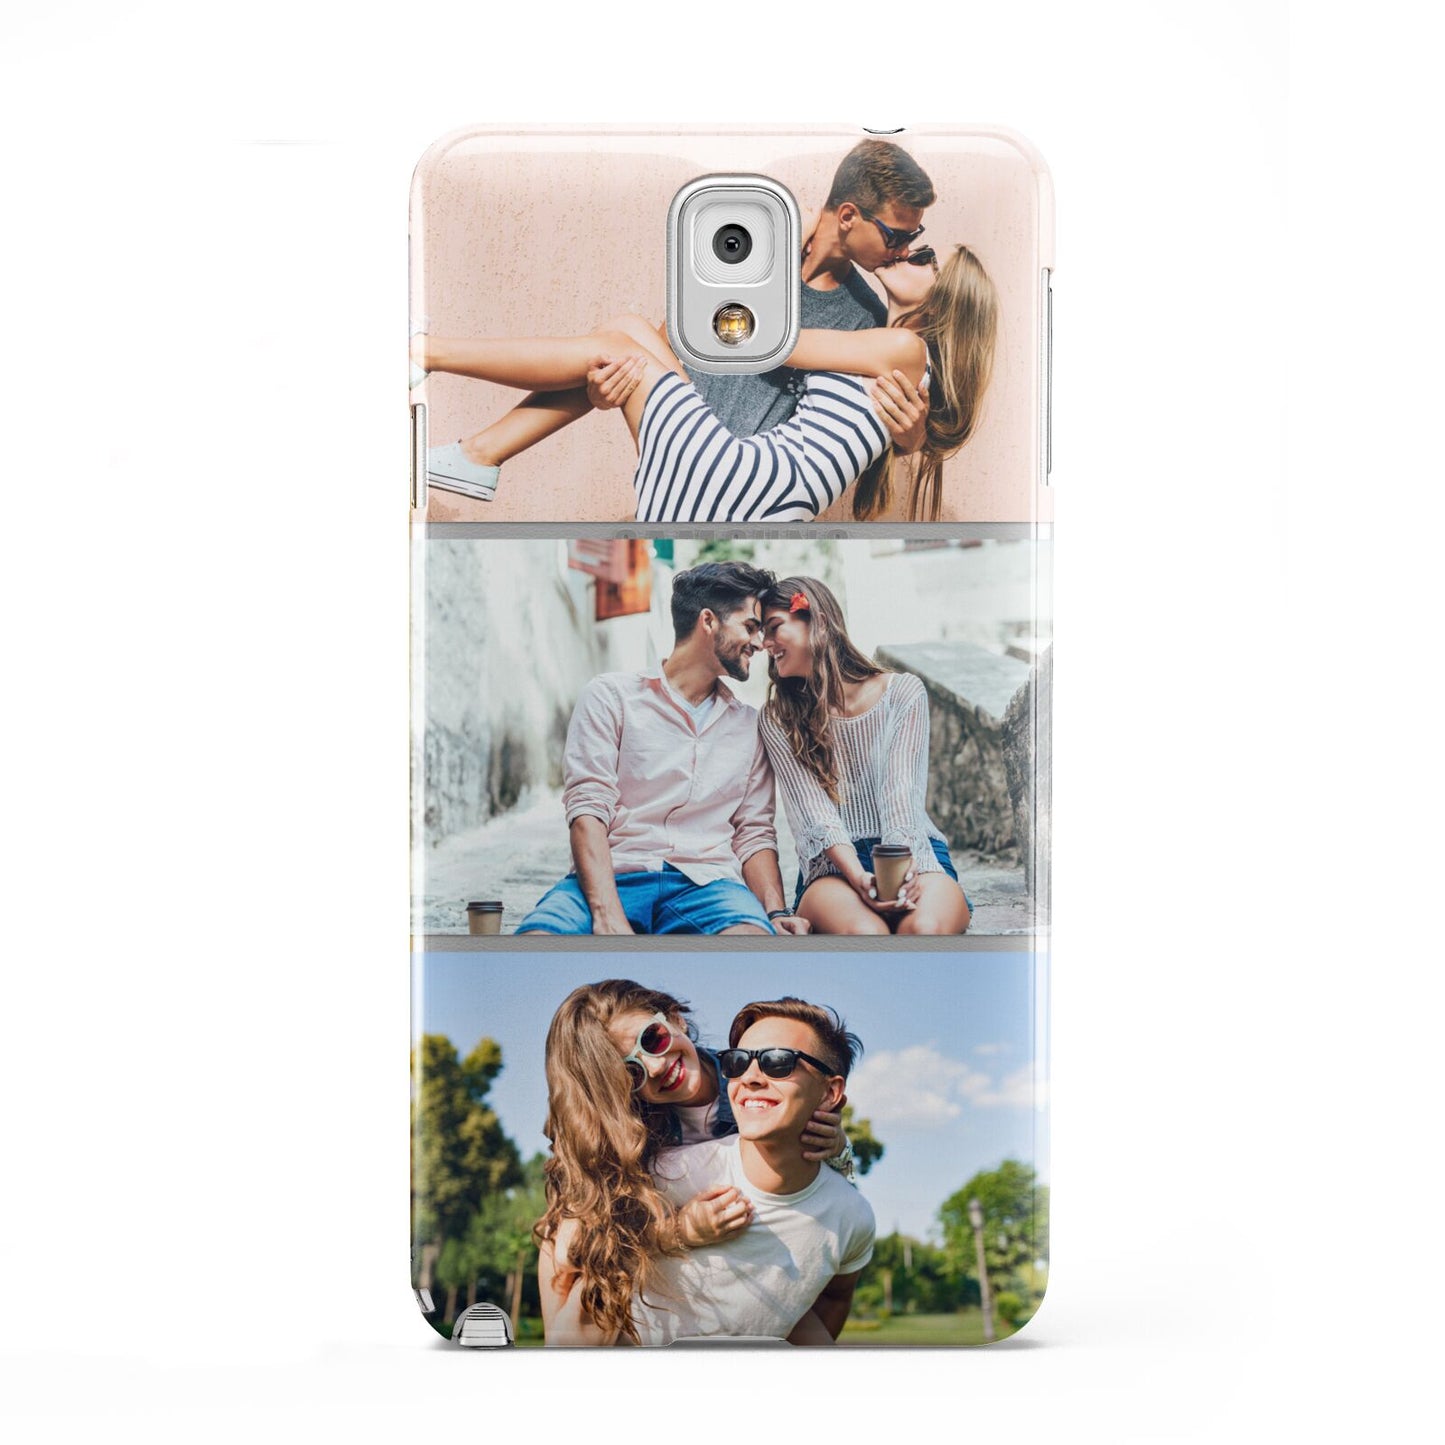 Three Photo Collage Samsung Galaxy Note 3 Case